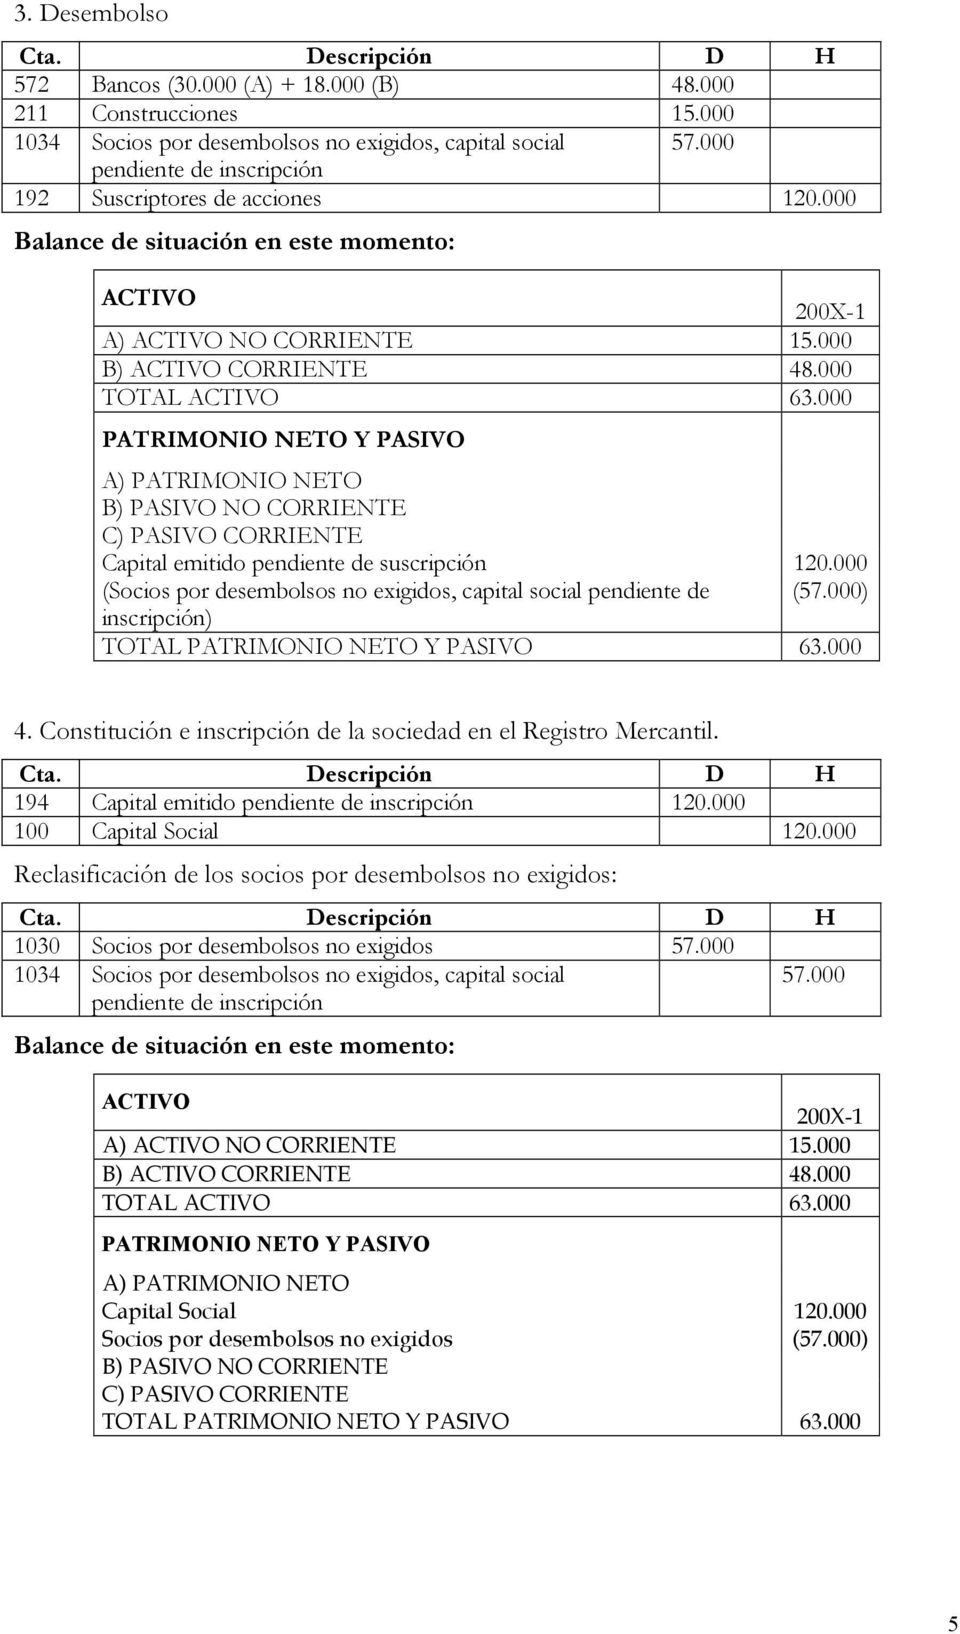 000 C) PASIVO CORRIENTE Capital emitido pendiente de suscripción 120.000 (Socios por desembolsos no exigidos, capital social pendiente de (57.000) inscripción) TOTAL 63.000 4.